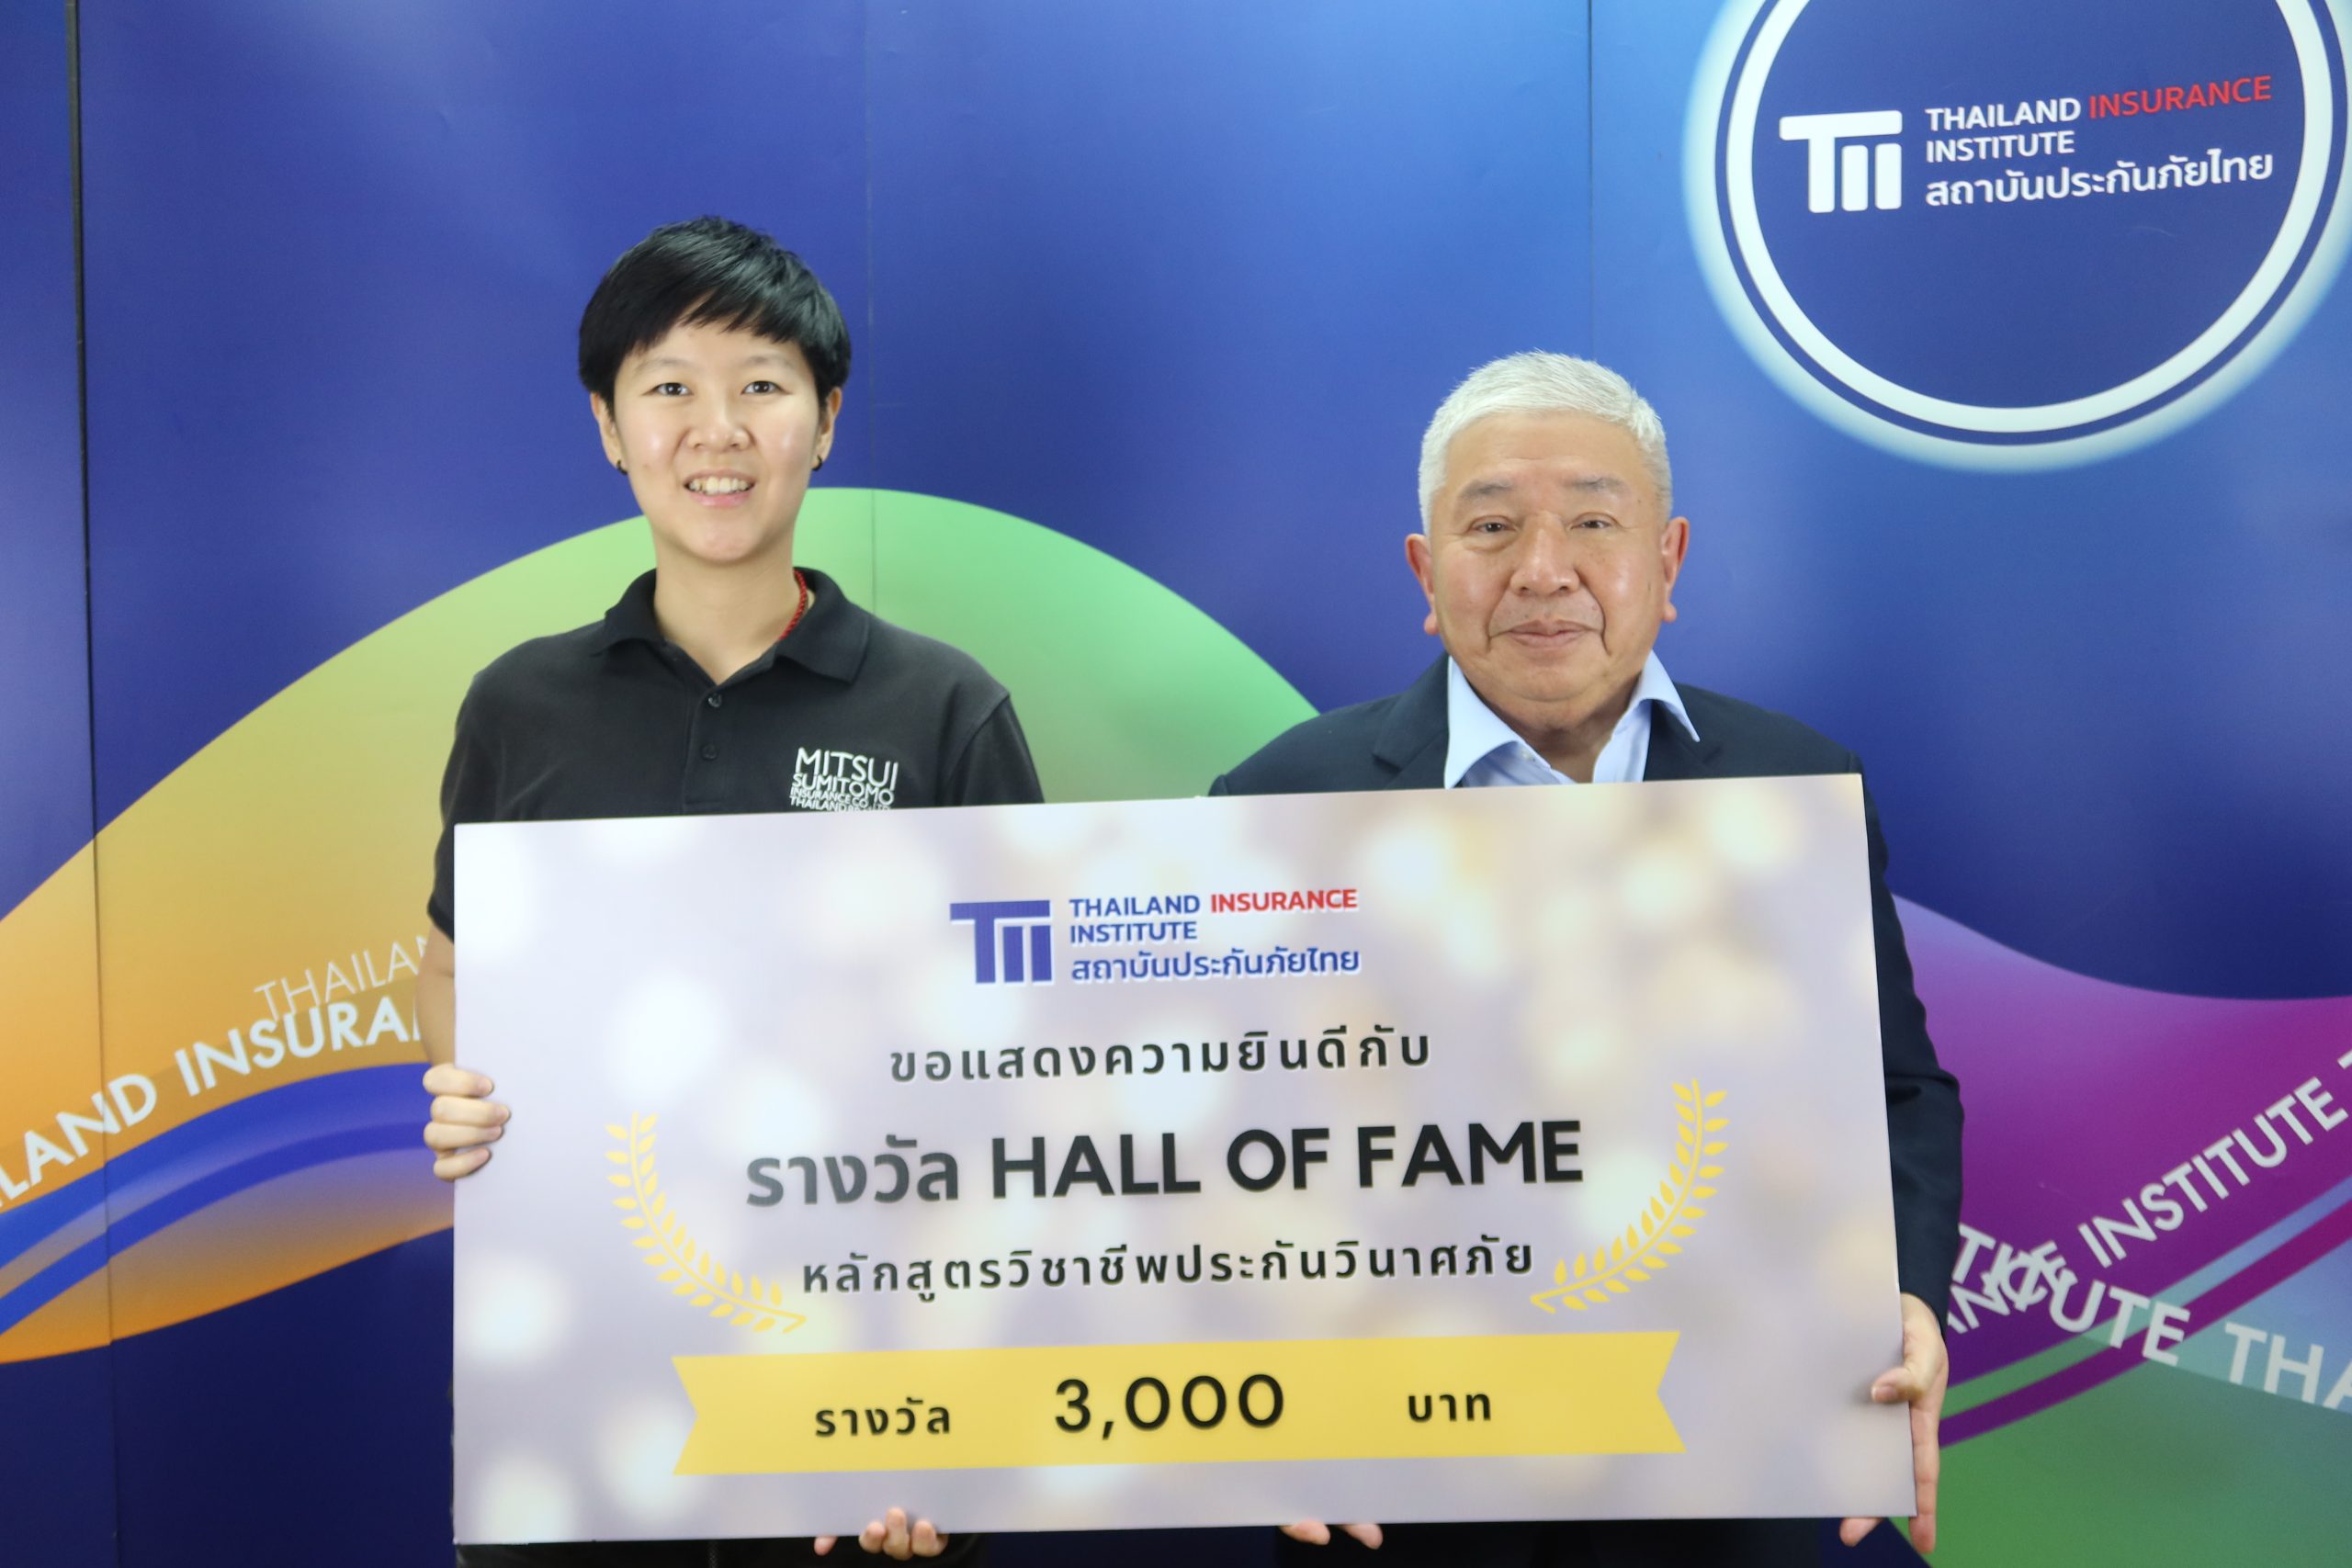 คุณทัตเทพ สุจิตจร ผู้อำนวยการสถาบันประกันภัยไทย มอบรางวัล Hall of Fame ให้แก่ผู้ที่มีผลการเรียนได้เกรด A 5 วิชา หลักสูตรวิชาชีพประกันวินาศภัย ประจำปี 2565 4